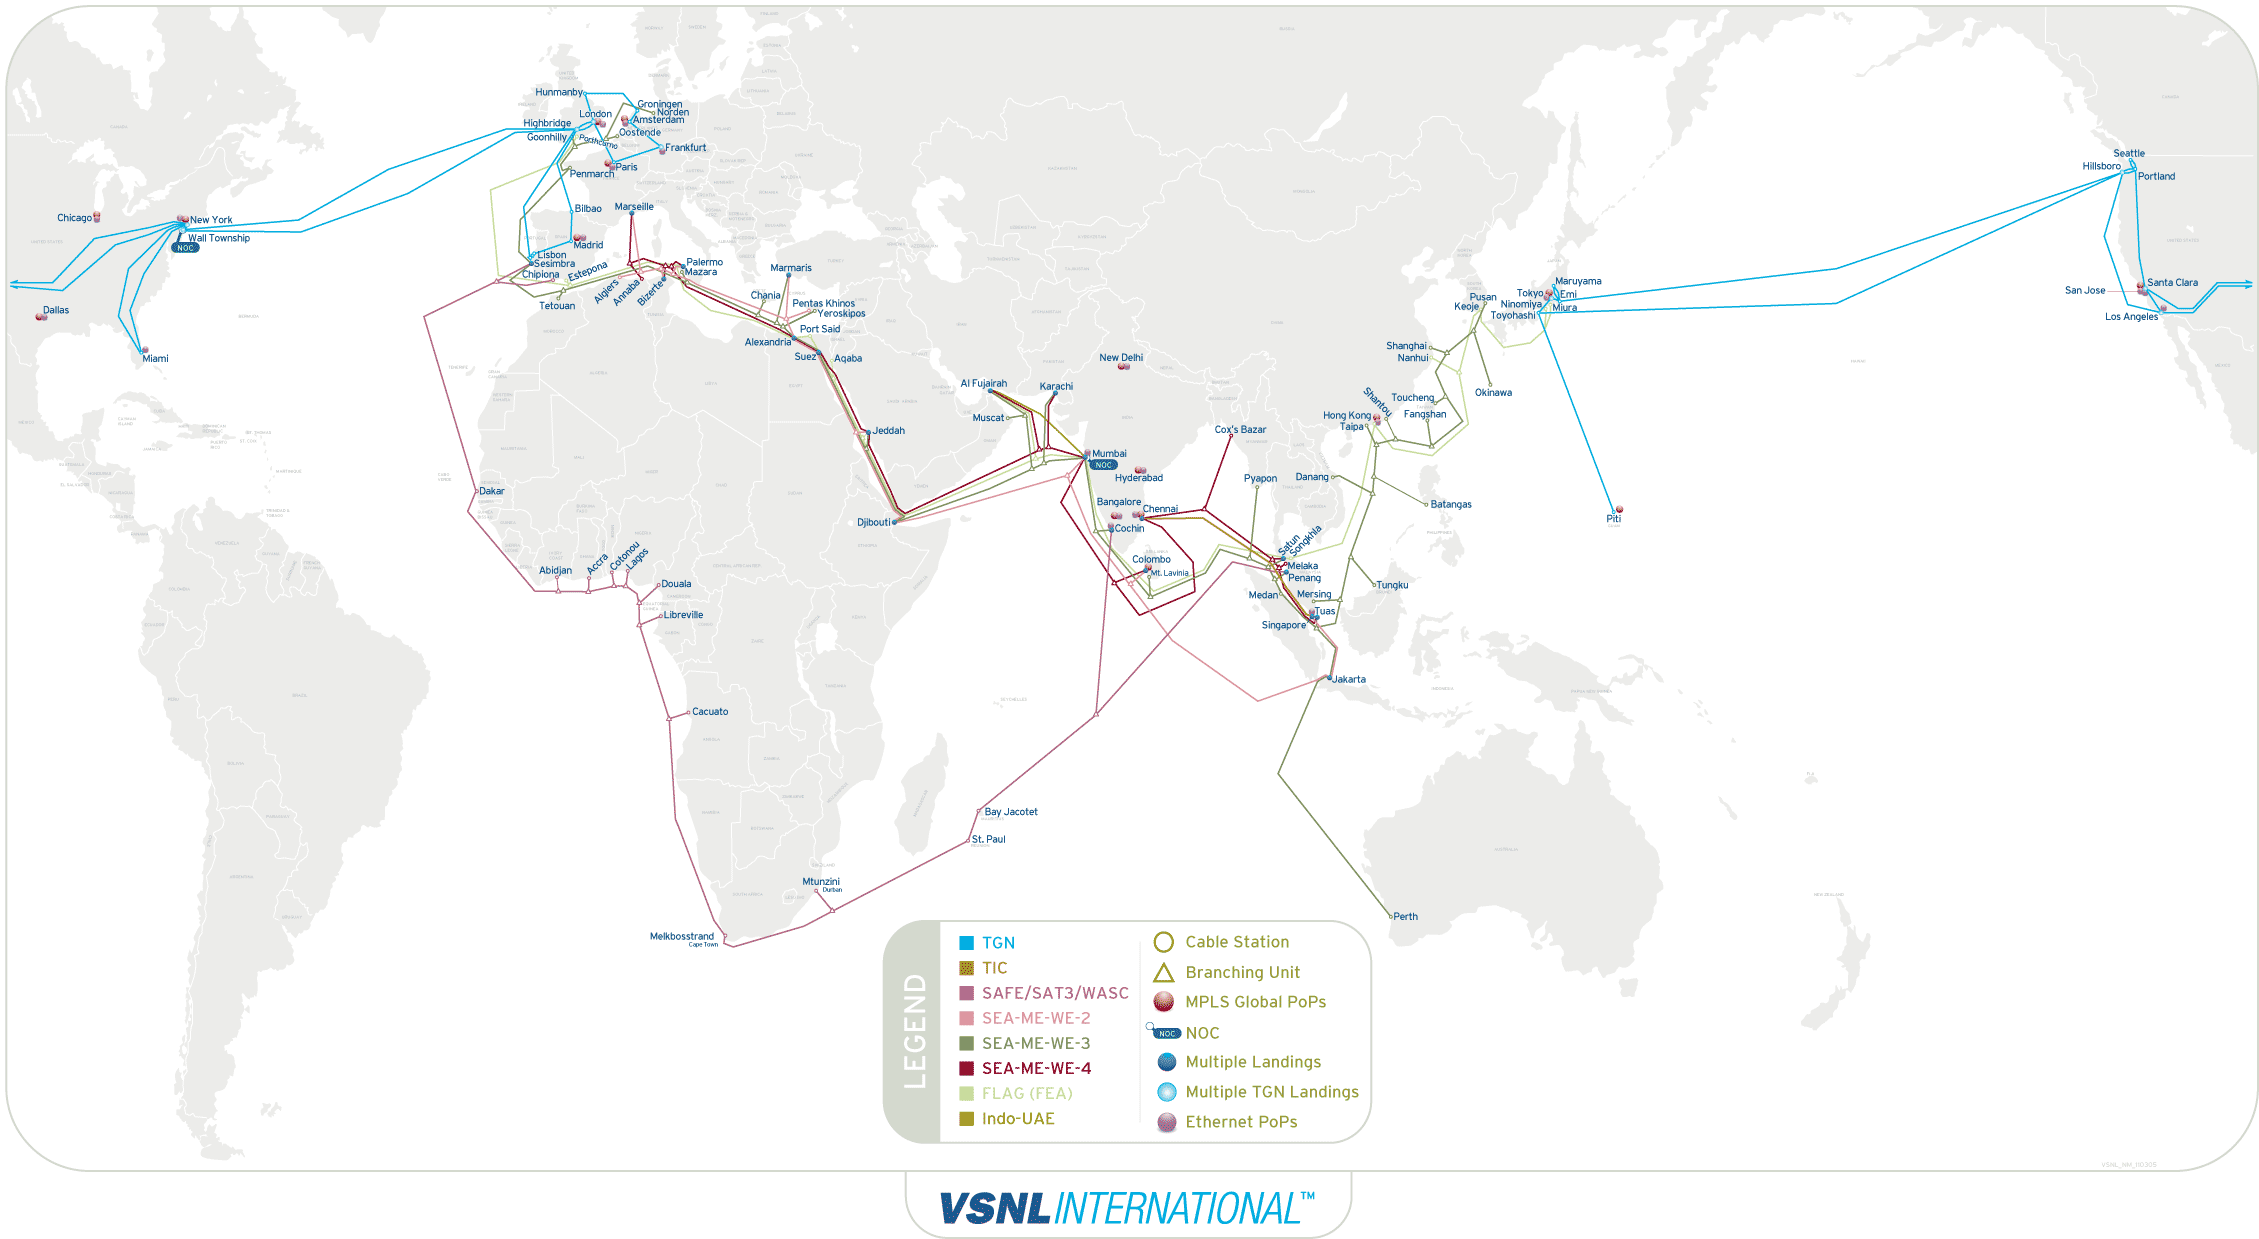 VSNL global network